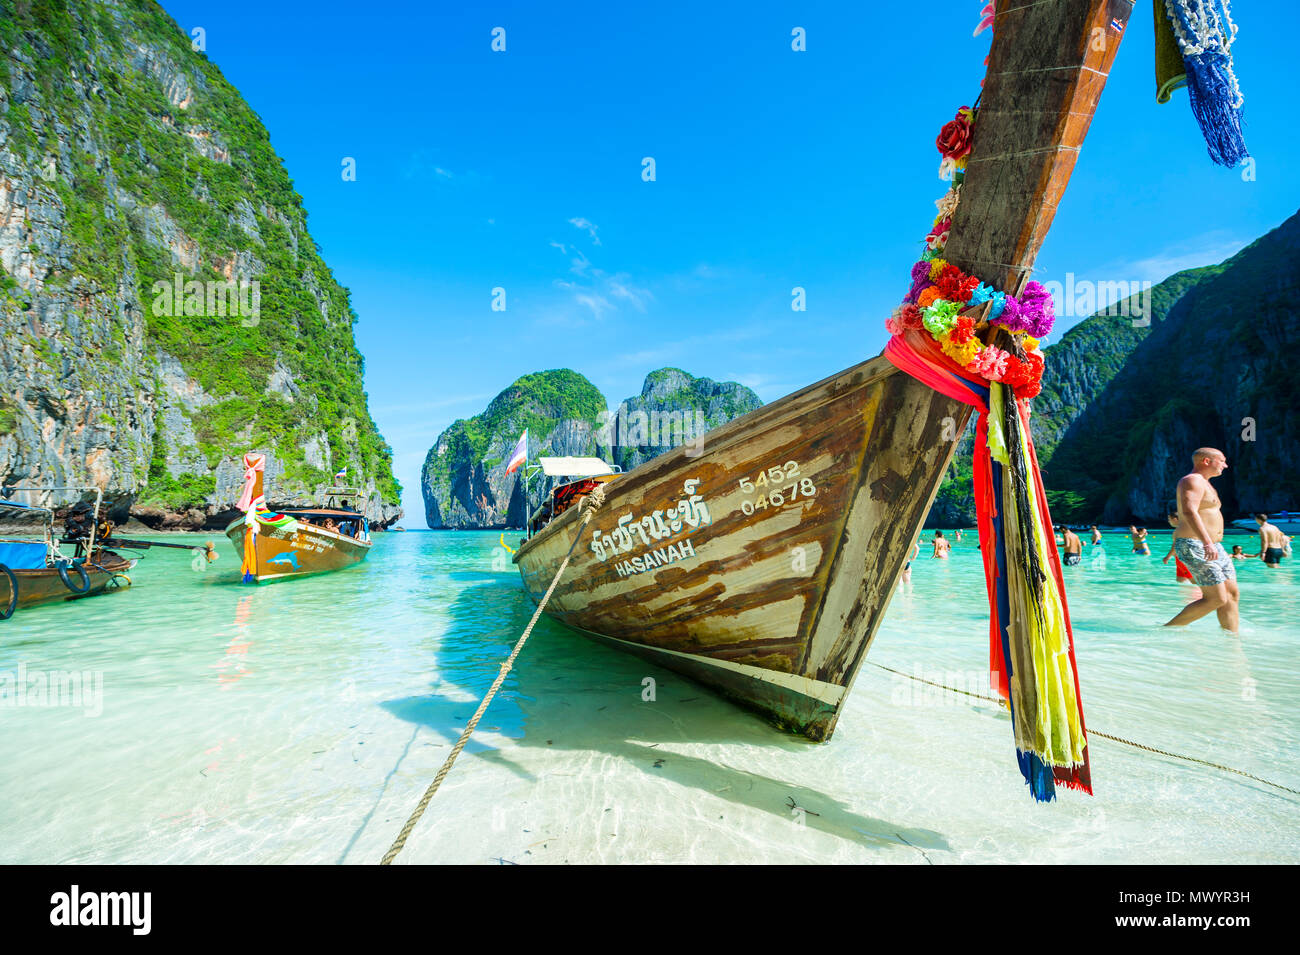 MAYA BAY, THAÏLANDE - 12 NOVEMBRE 2014 : bateaux longtail thaïlandais décoré avec bonne chance les châssis de la baie de Maya avant de fermer en raison de la surpopulation Banque D'Images